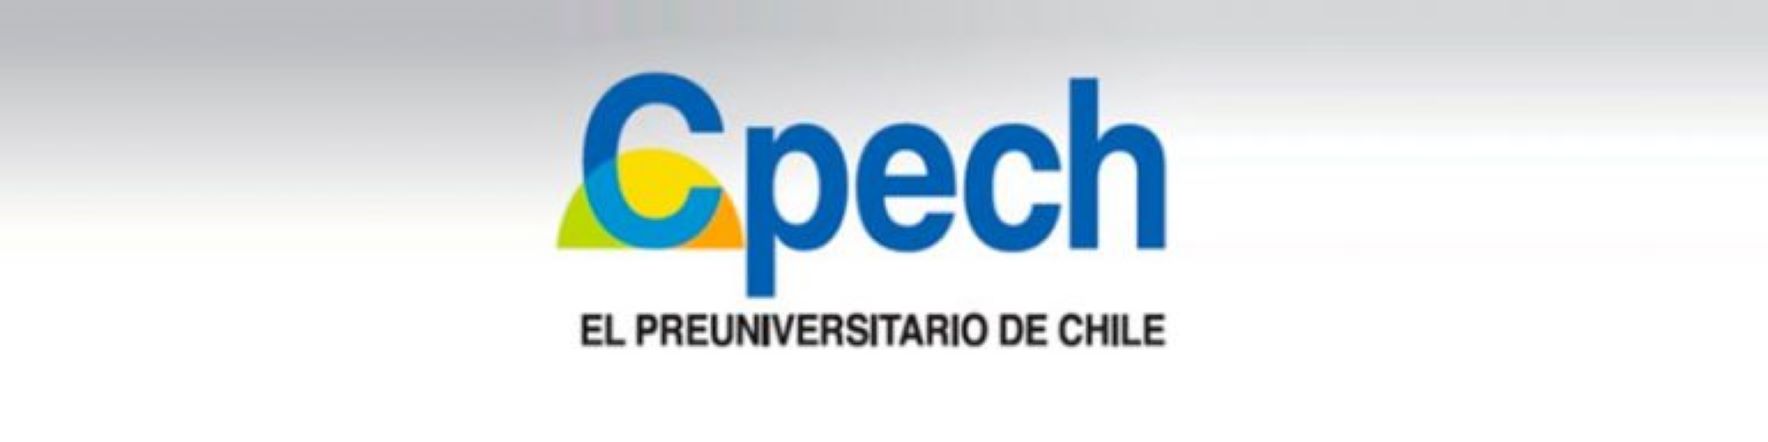 SERNAC inició  procedimiento contra Preuniversitario CPECH por incumplimientos a la ley del consumidor